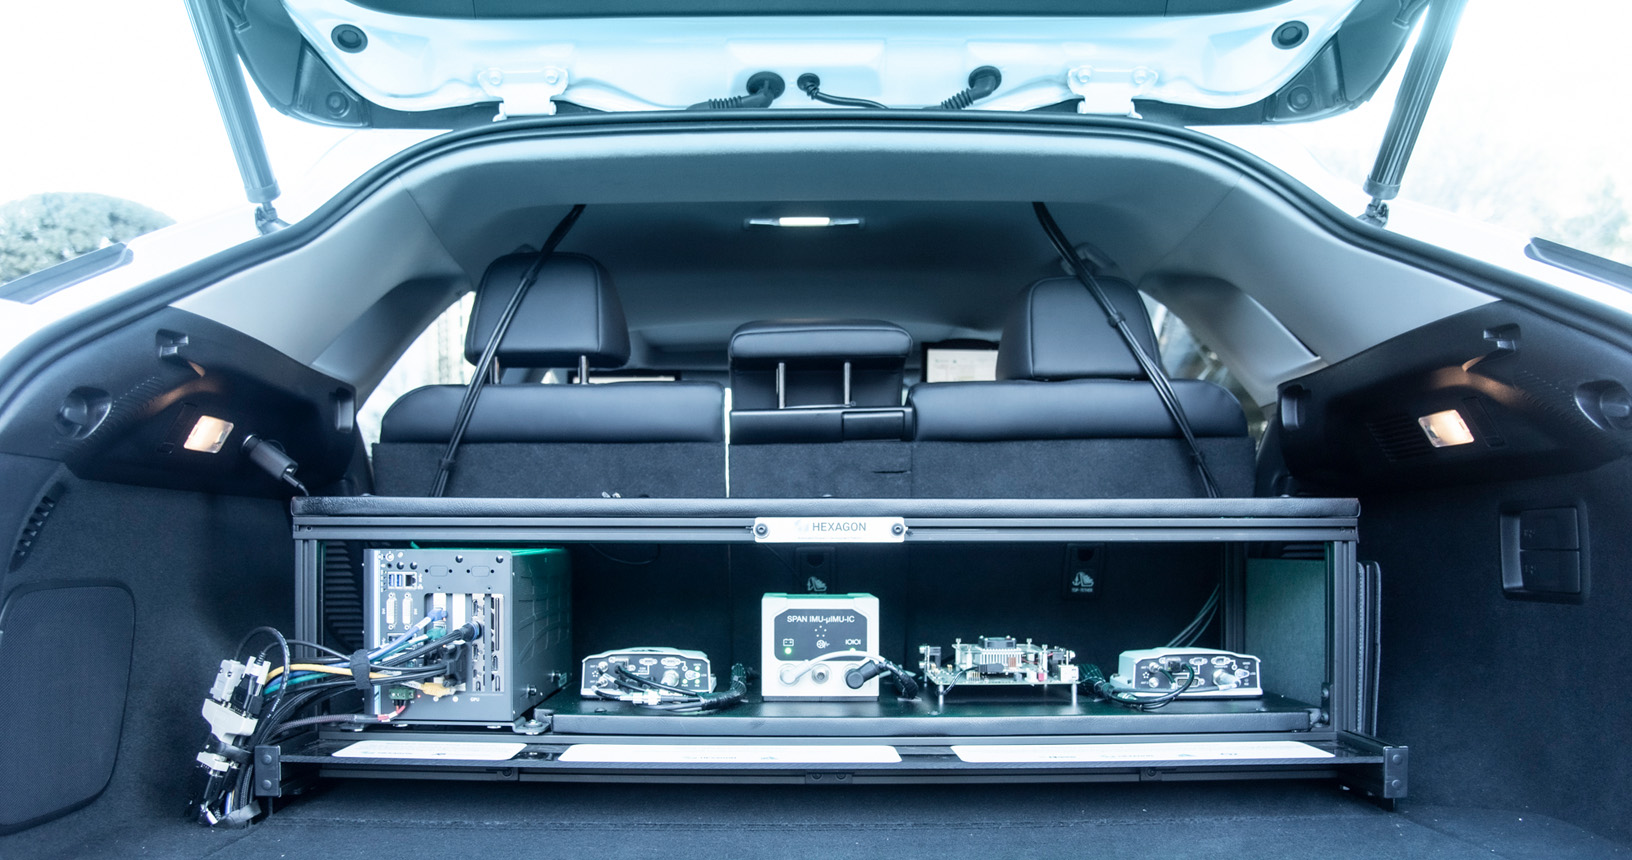 Offener Kofferraum eines Lexus mit verschiedenen Geräten, die einen autonomen Betrieb ermöglichen.